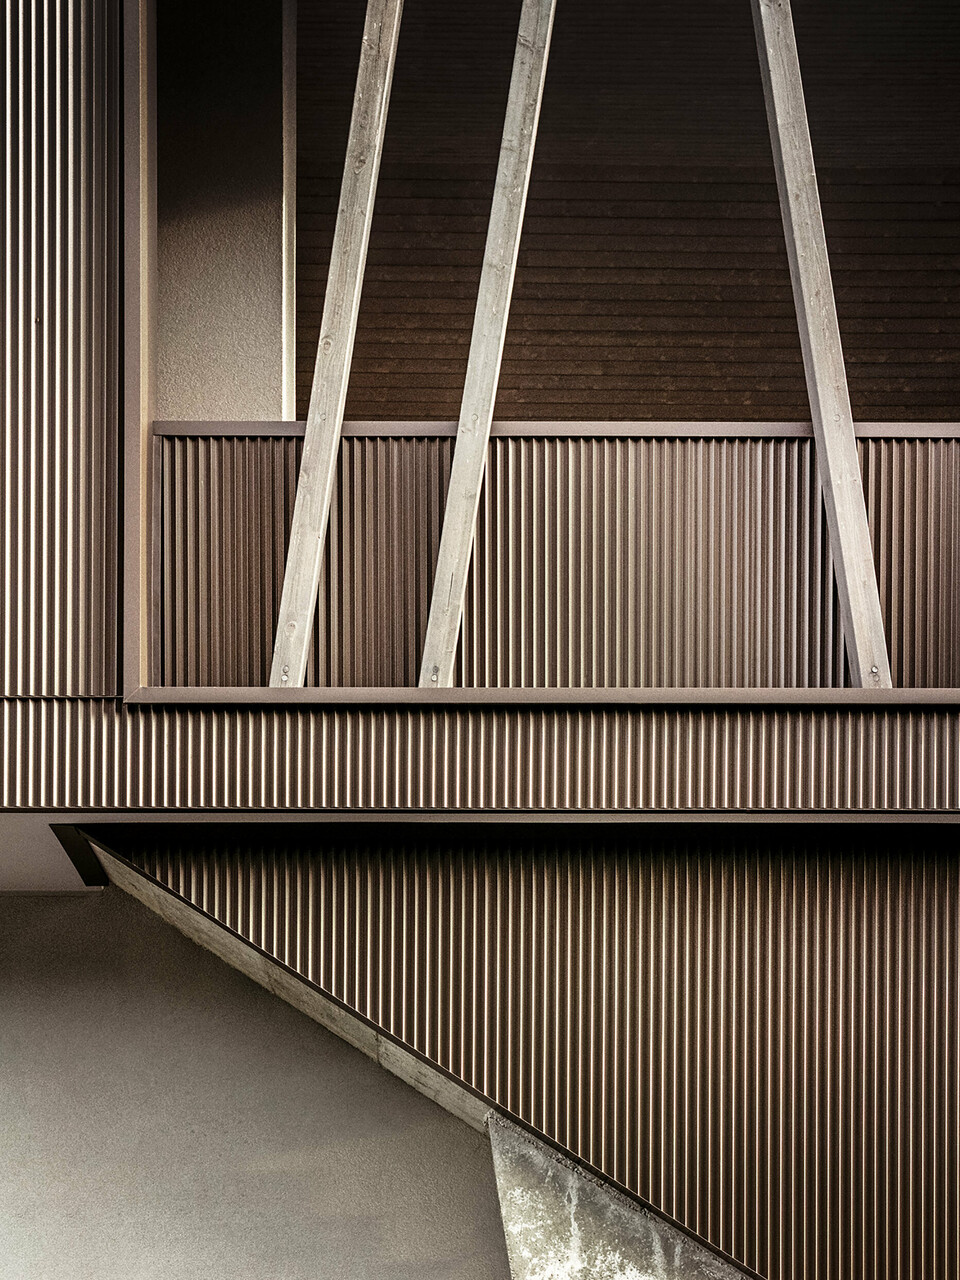 Primo piano della facciata in alluminio con profilo a zeta e travi in legno inclinate della villa 2B a Morbegno, ristrutturata dall'architetto Massimo Mescia di altrostudio architetti.